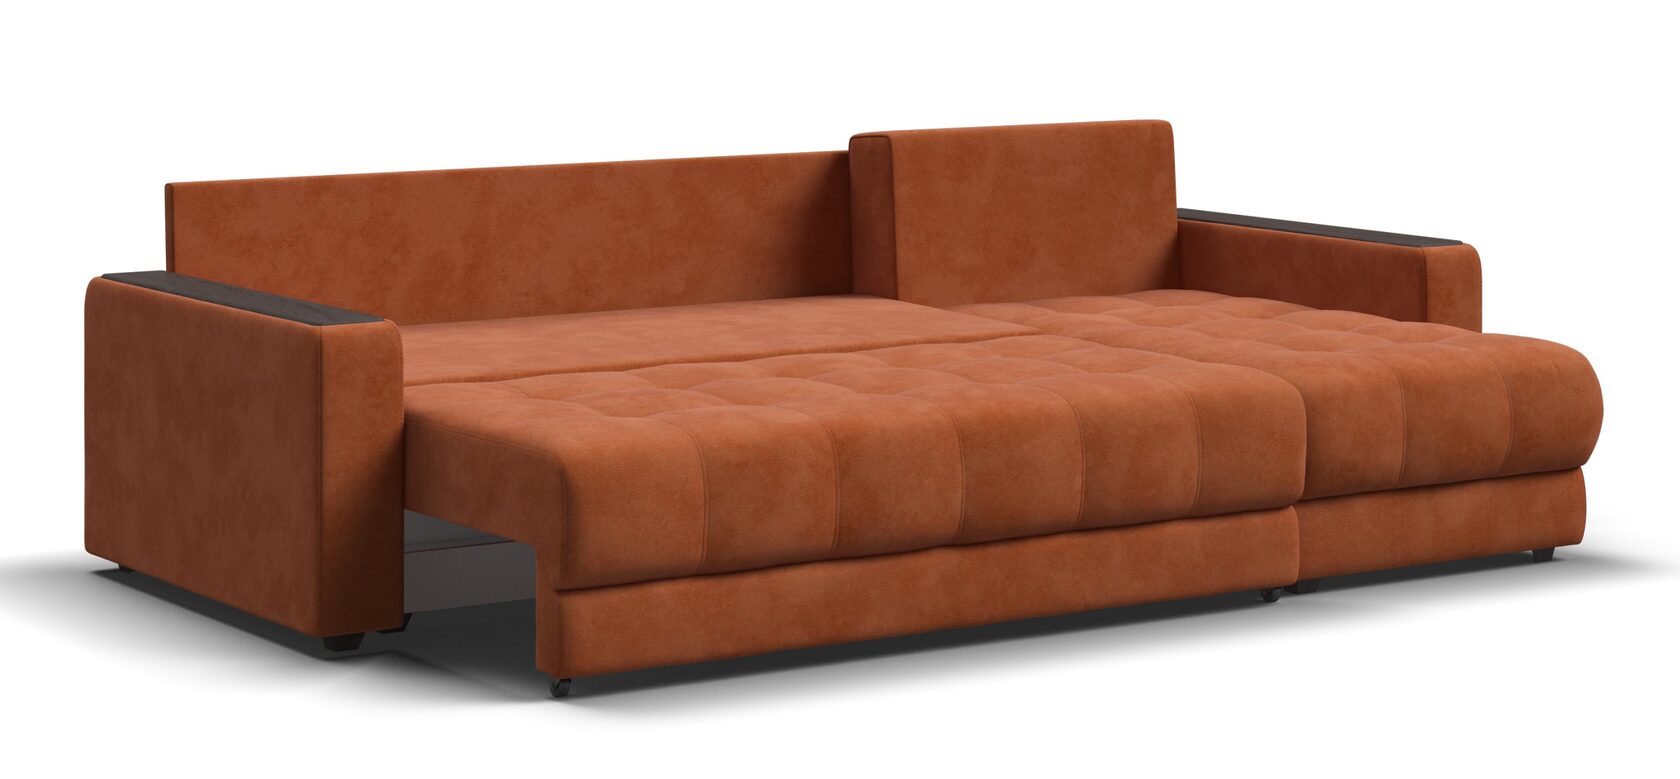 Много мебели диван босс угловой xl размеры